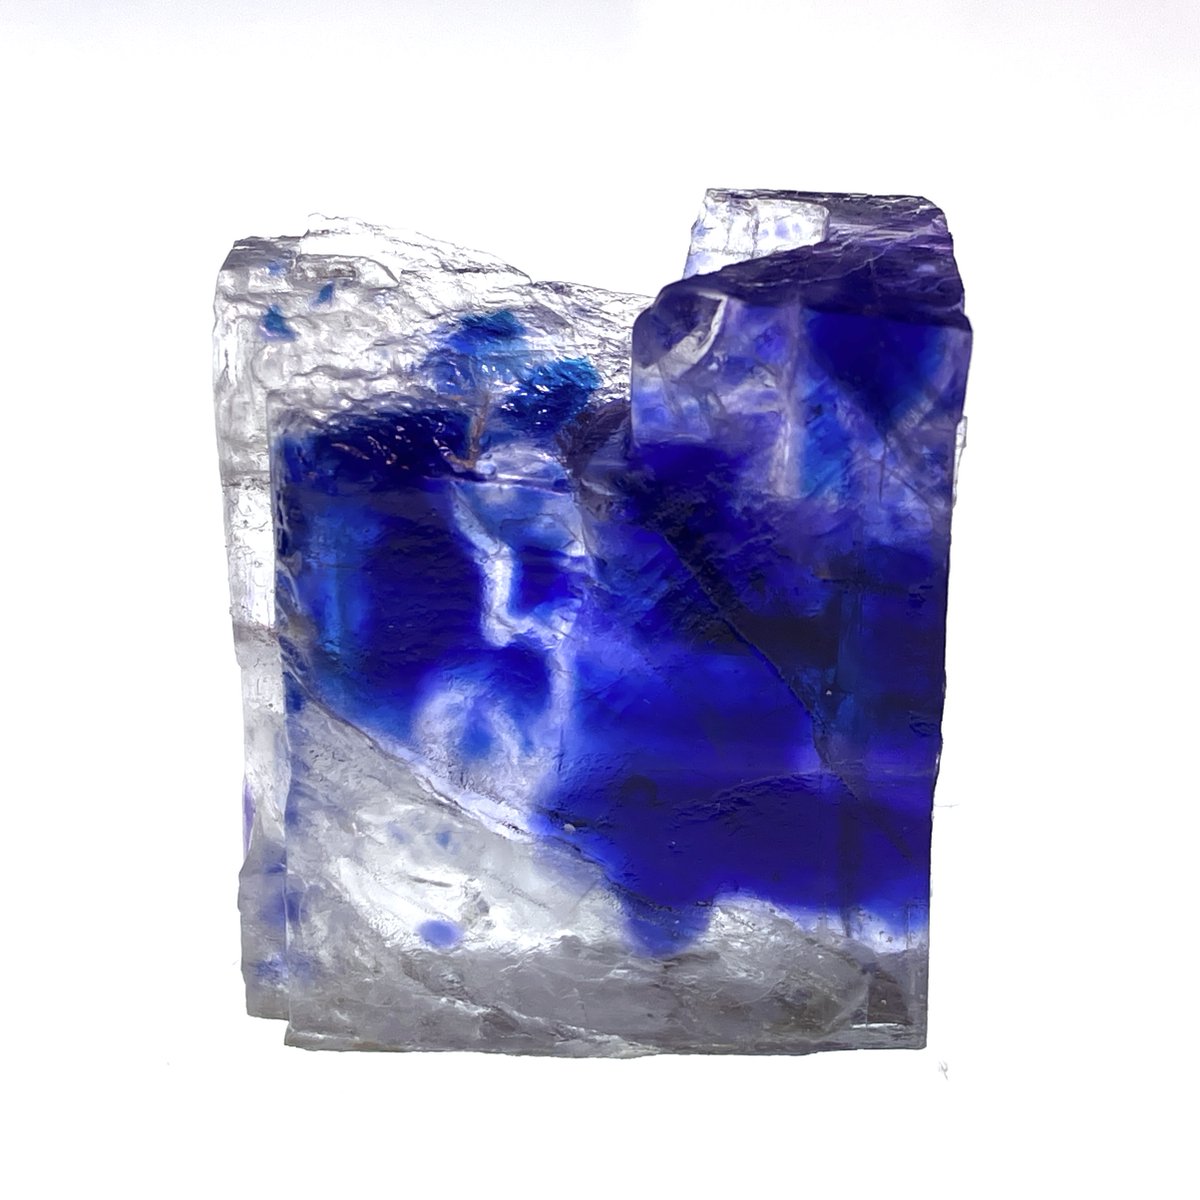 「東京ミネラルショー2022 戦利品①・岩塩(Halite)・藍鉄鉱(Vivian」|sachiのイラスト